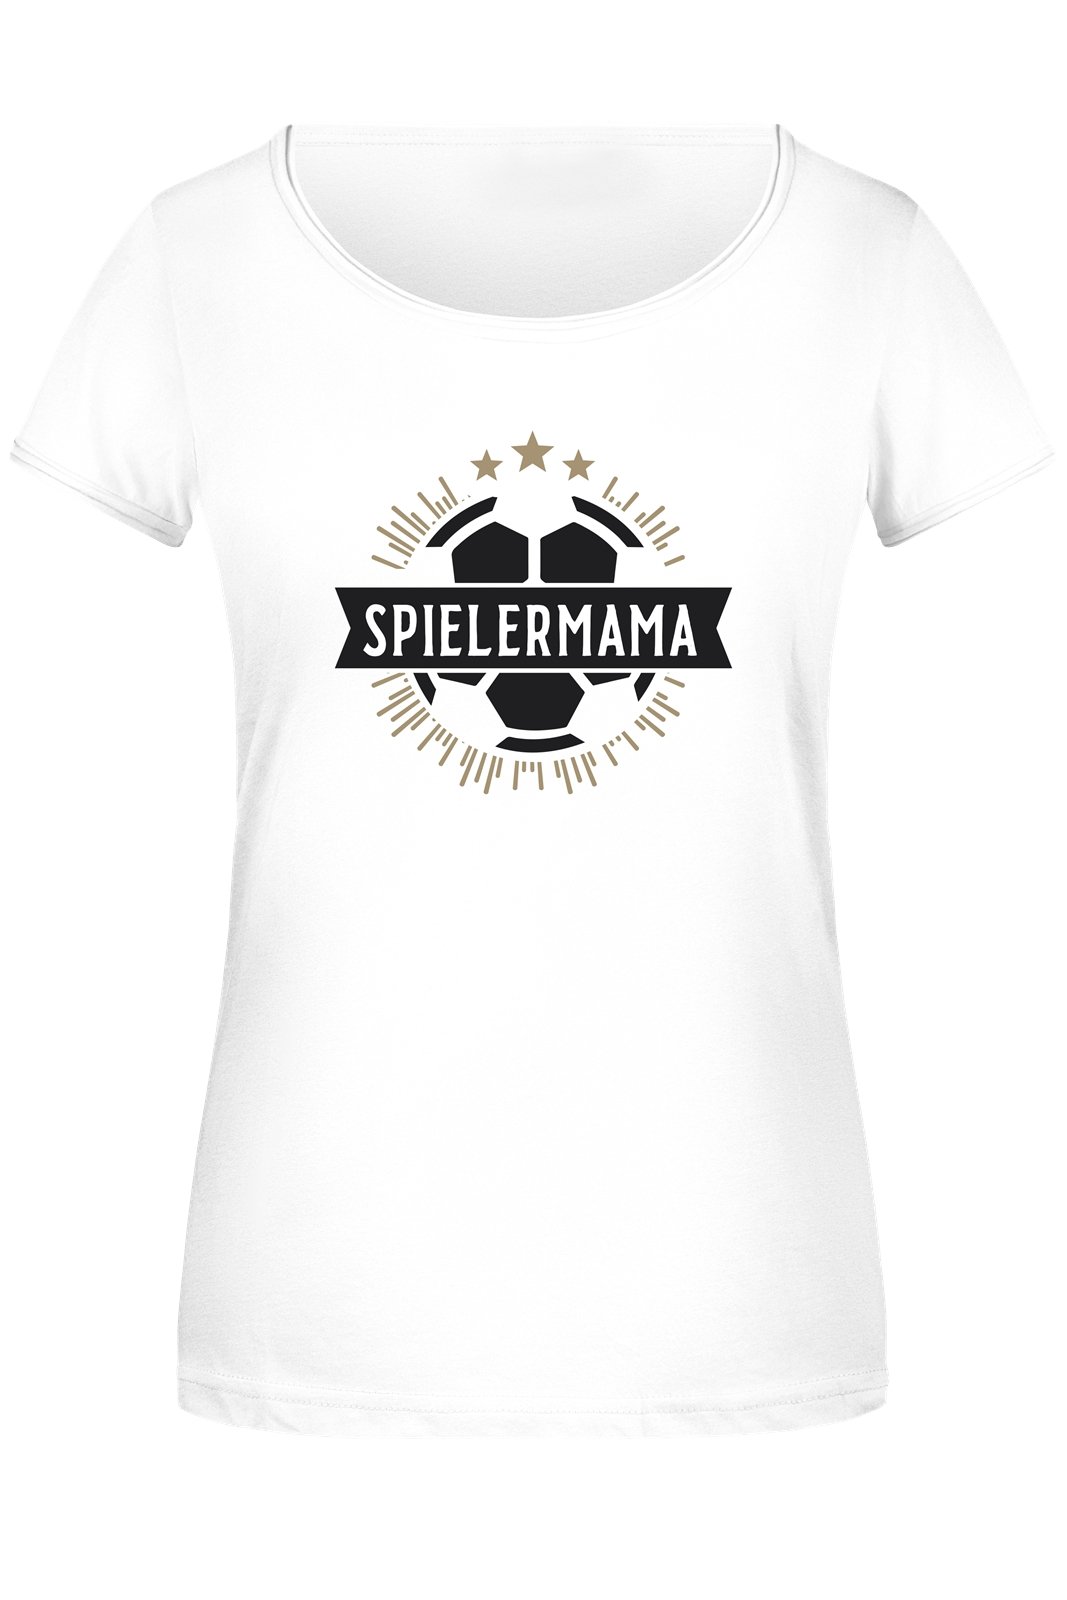 Bild: T-Shirt Damen - Spielermama (Fußball) Geschenkidee